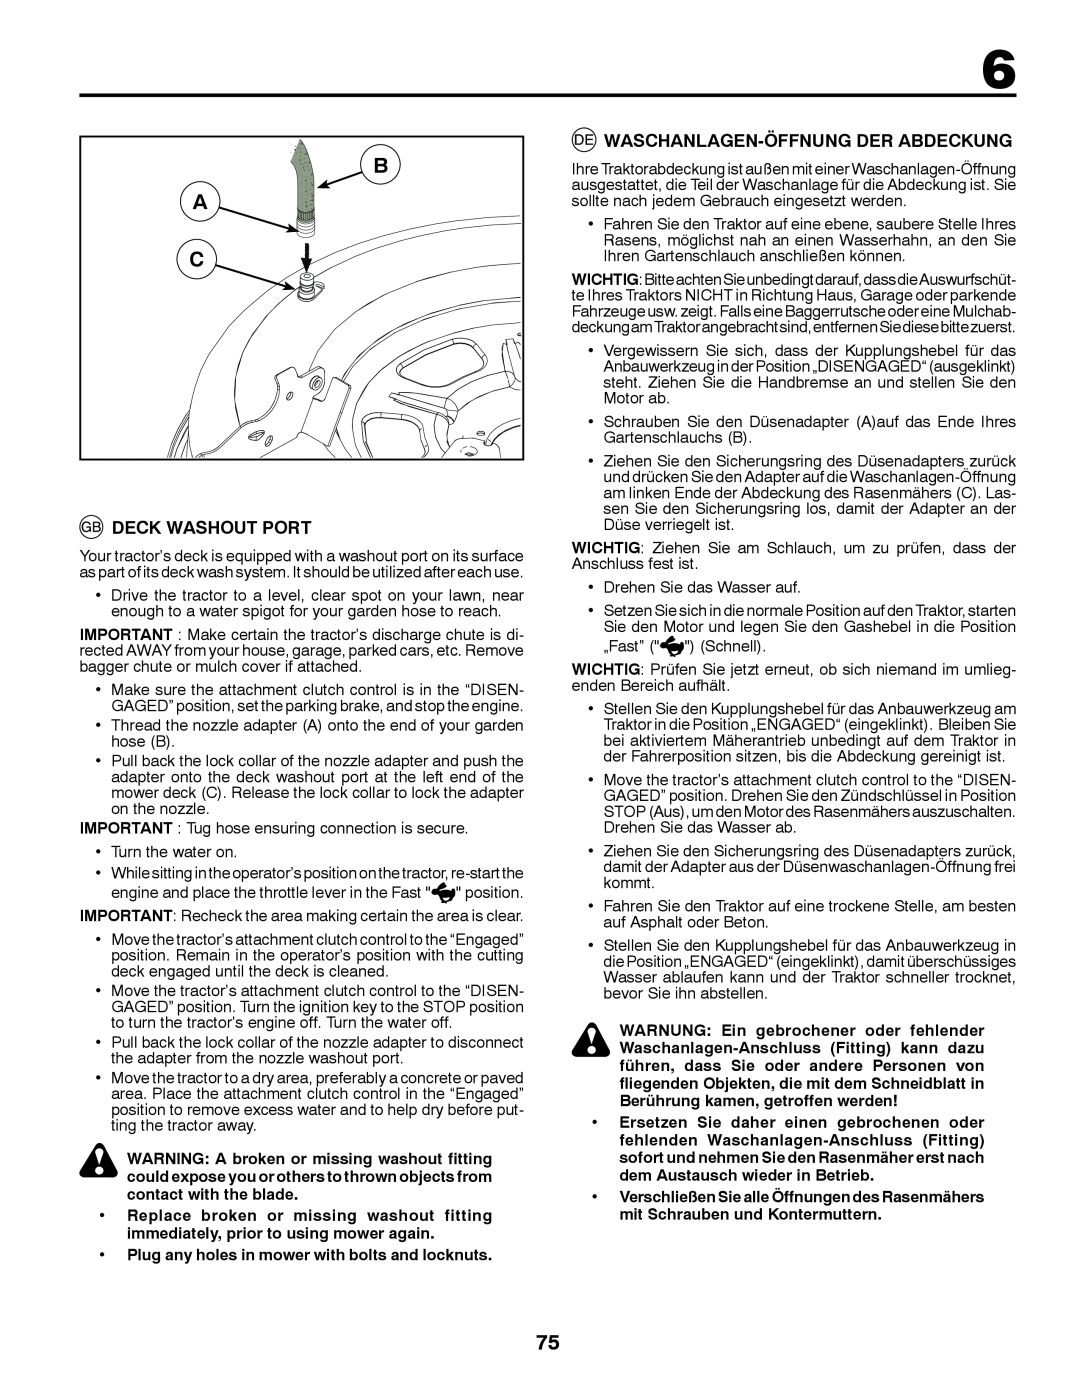 McCulloch 96041016500 instruction manual Deck Washout Port, Waschanlagen-Öffnung Der Abdeckung 